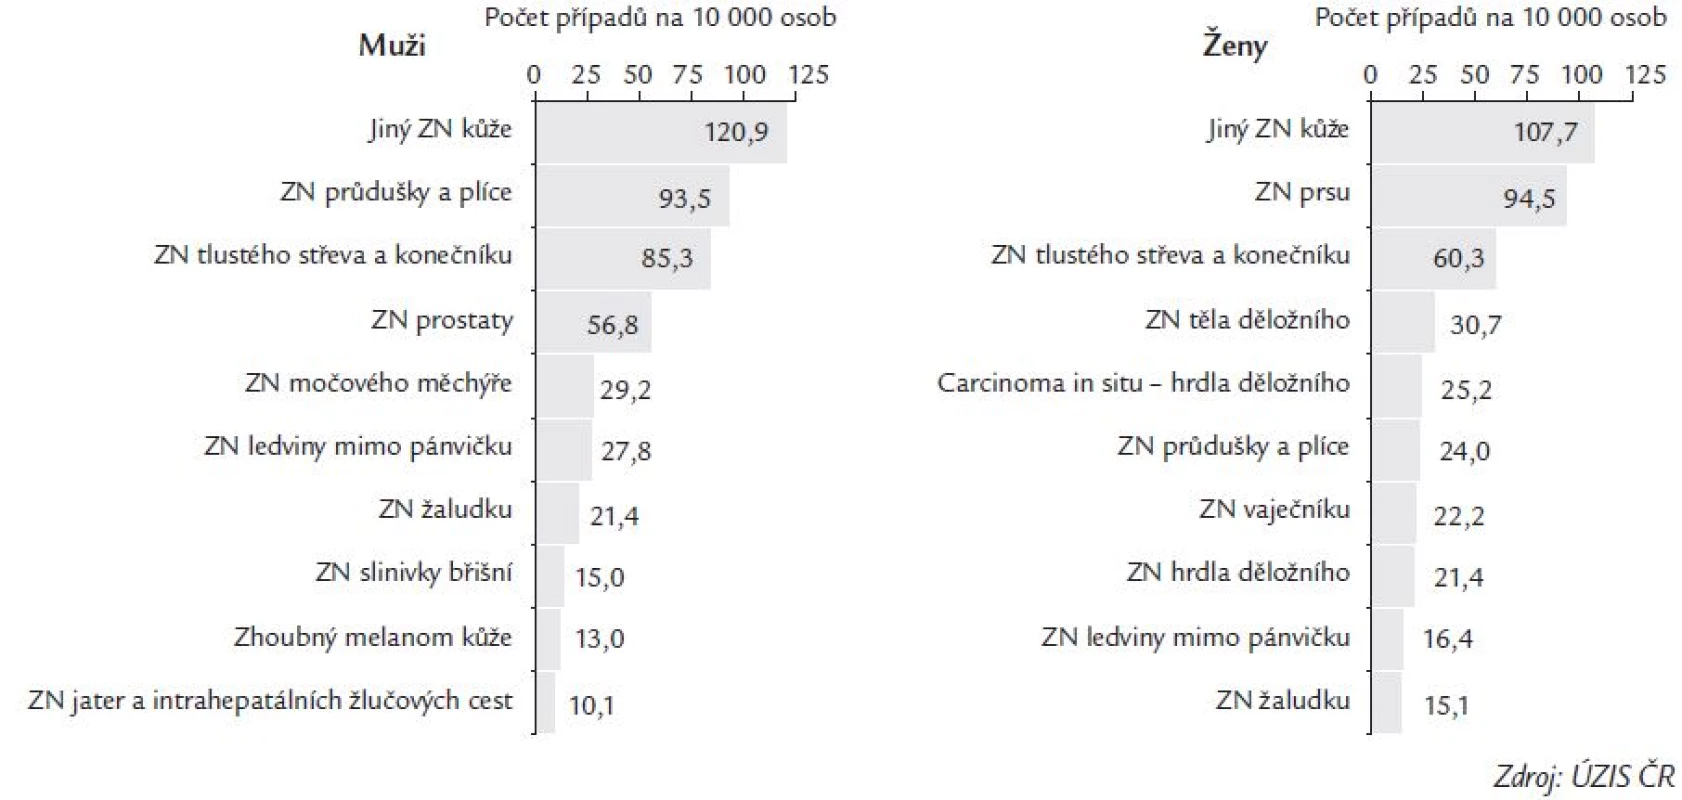 Nejčastější onkologické diagnózy v ČR – rok 1999.